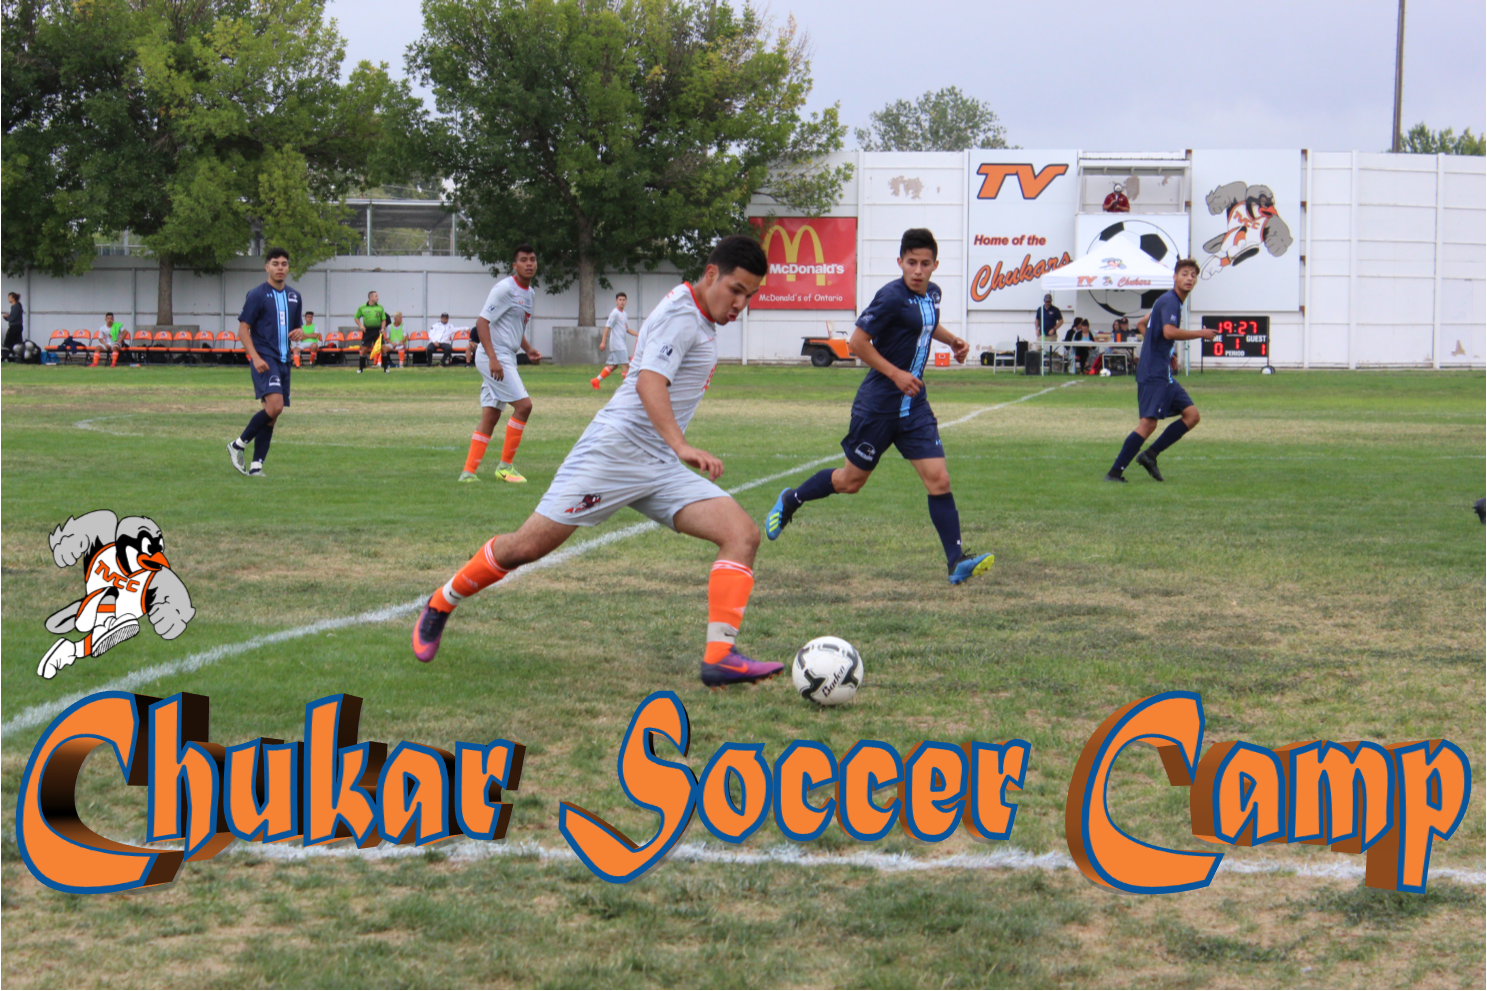 Chukar Soccer Camp